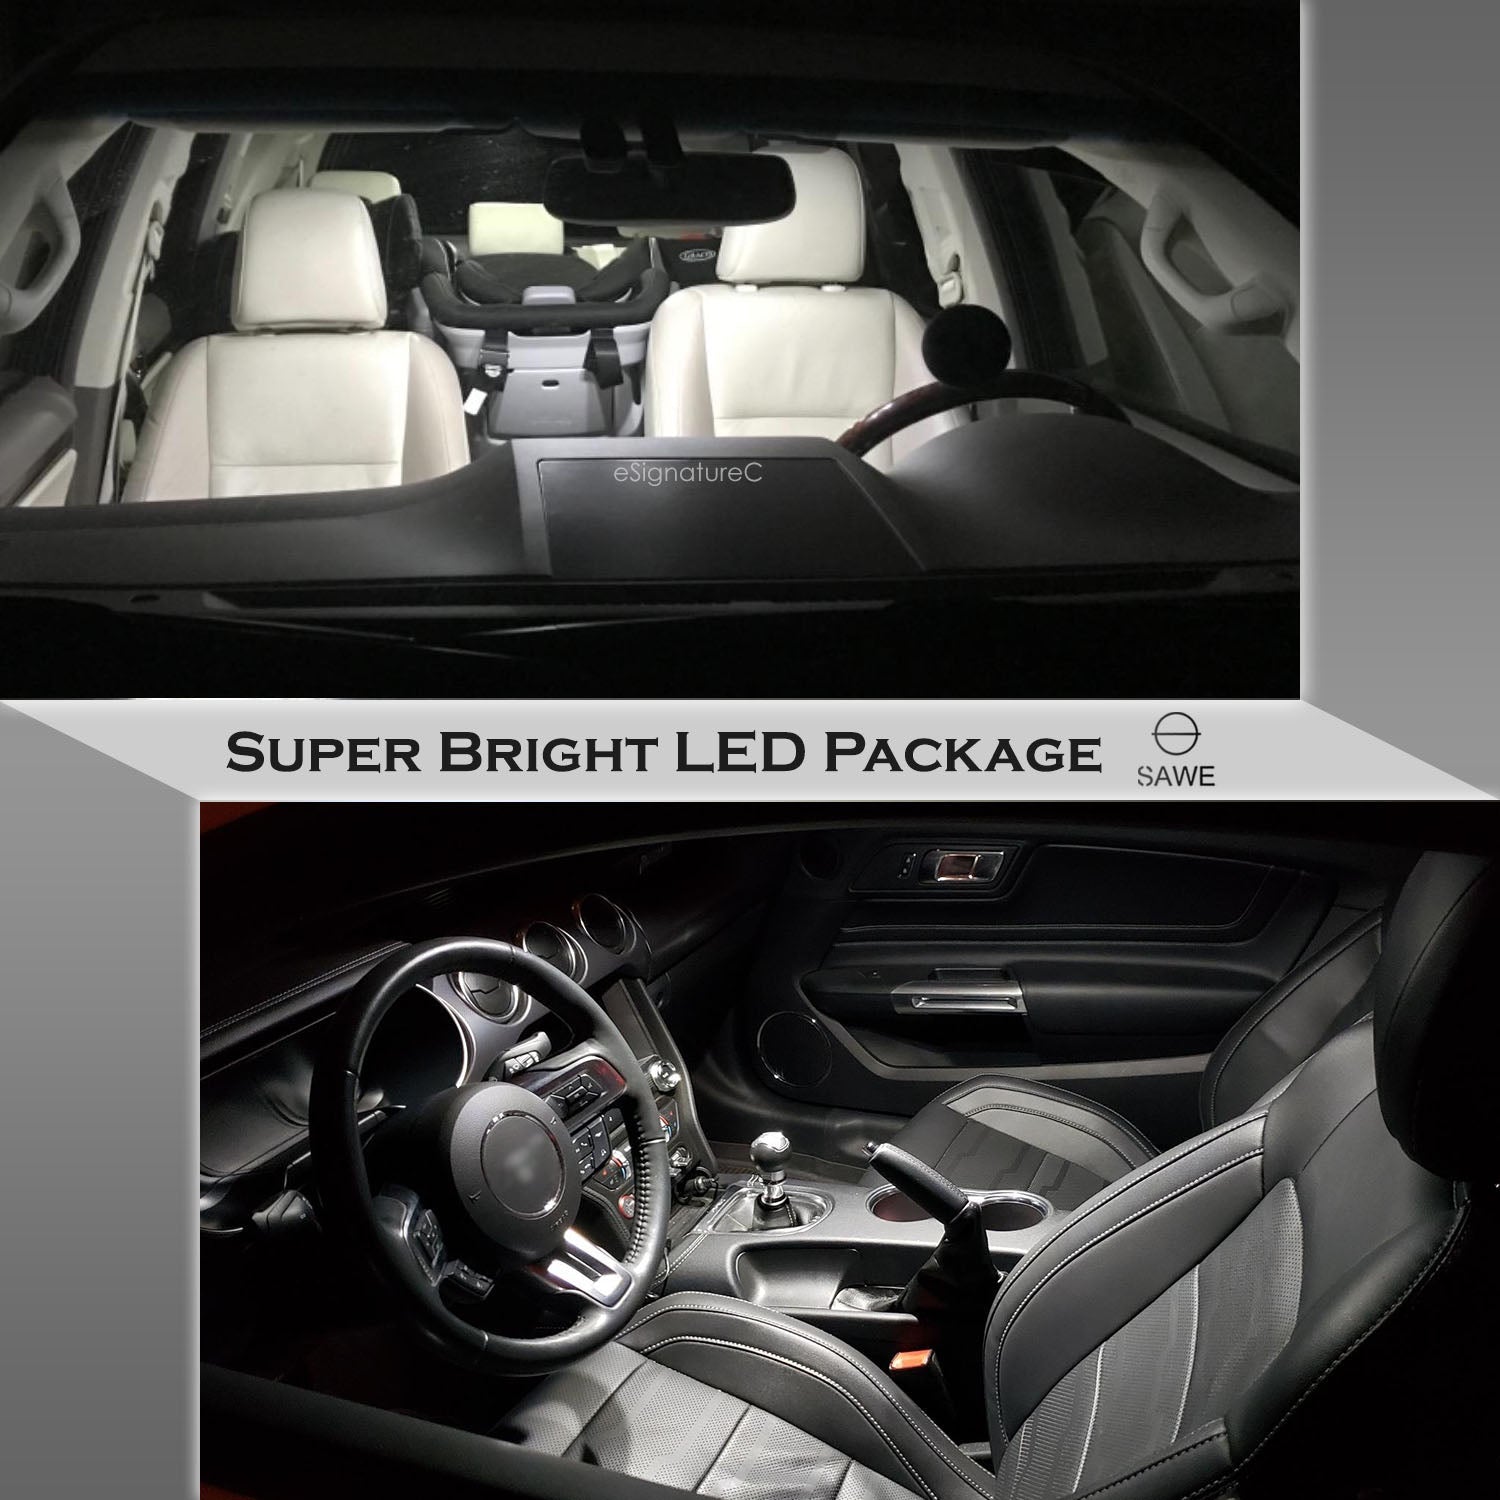 For Infiniti G37 Q50 Interior LED Lights - Dome & Map Light Bulbs Package Kit for 2008 - 2020 - White